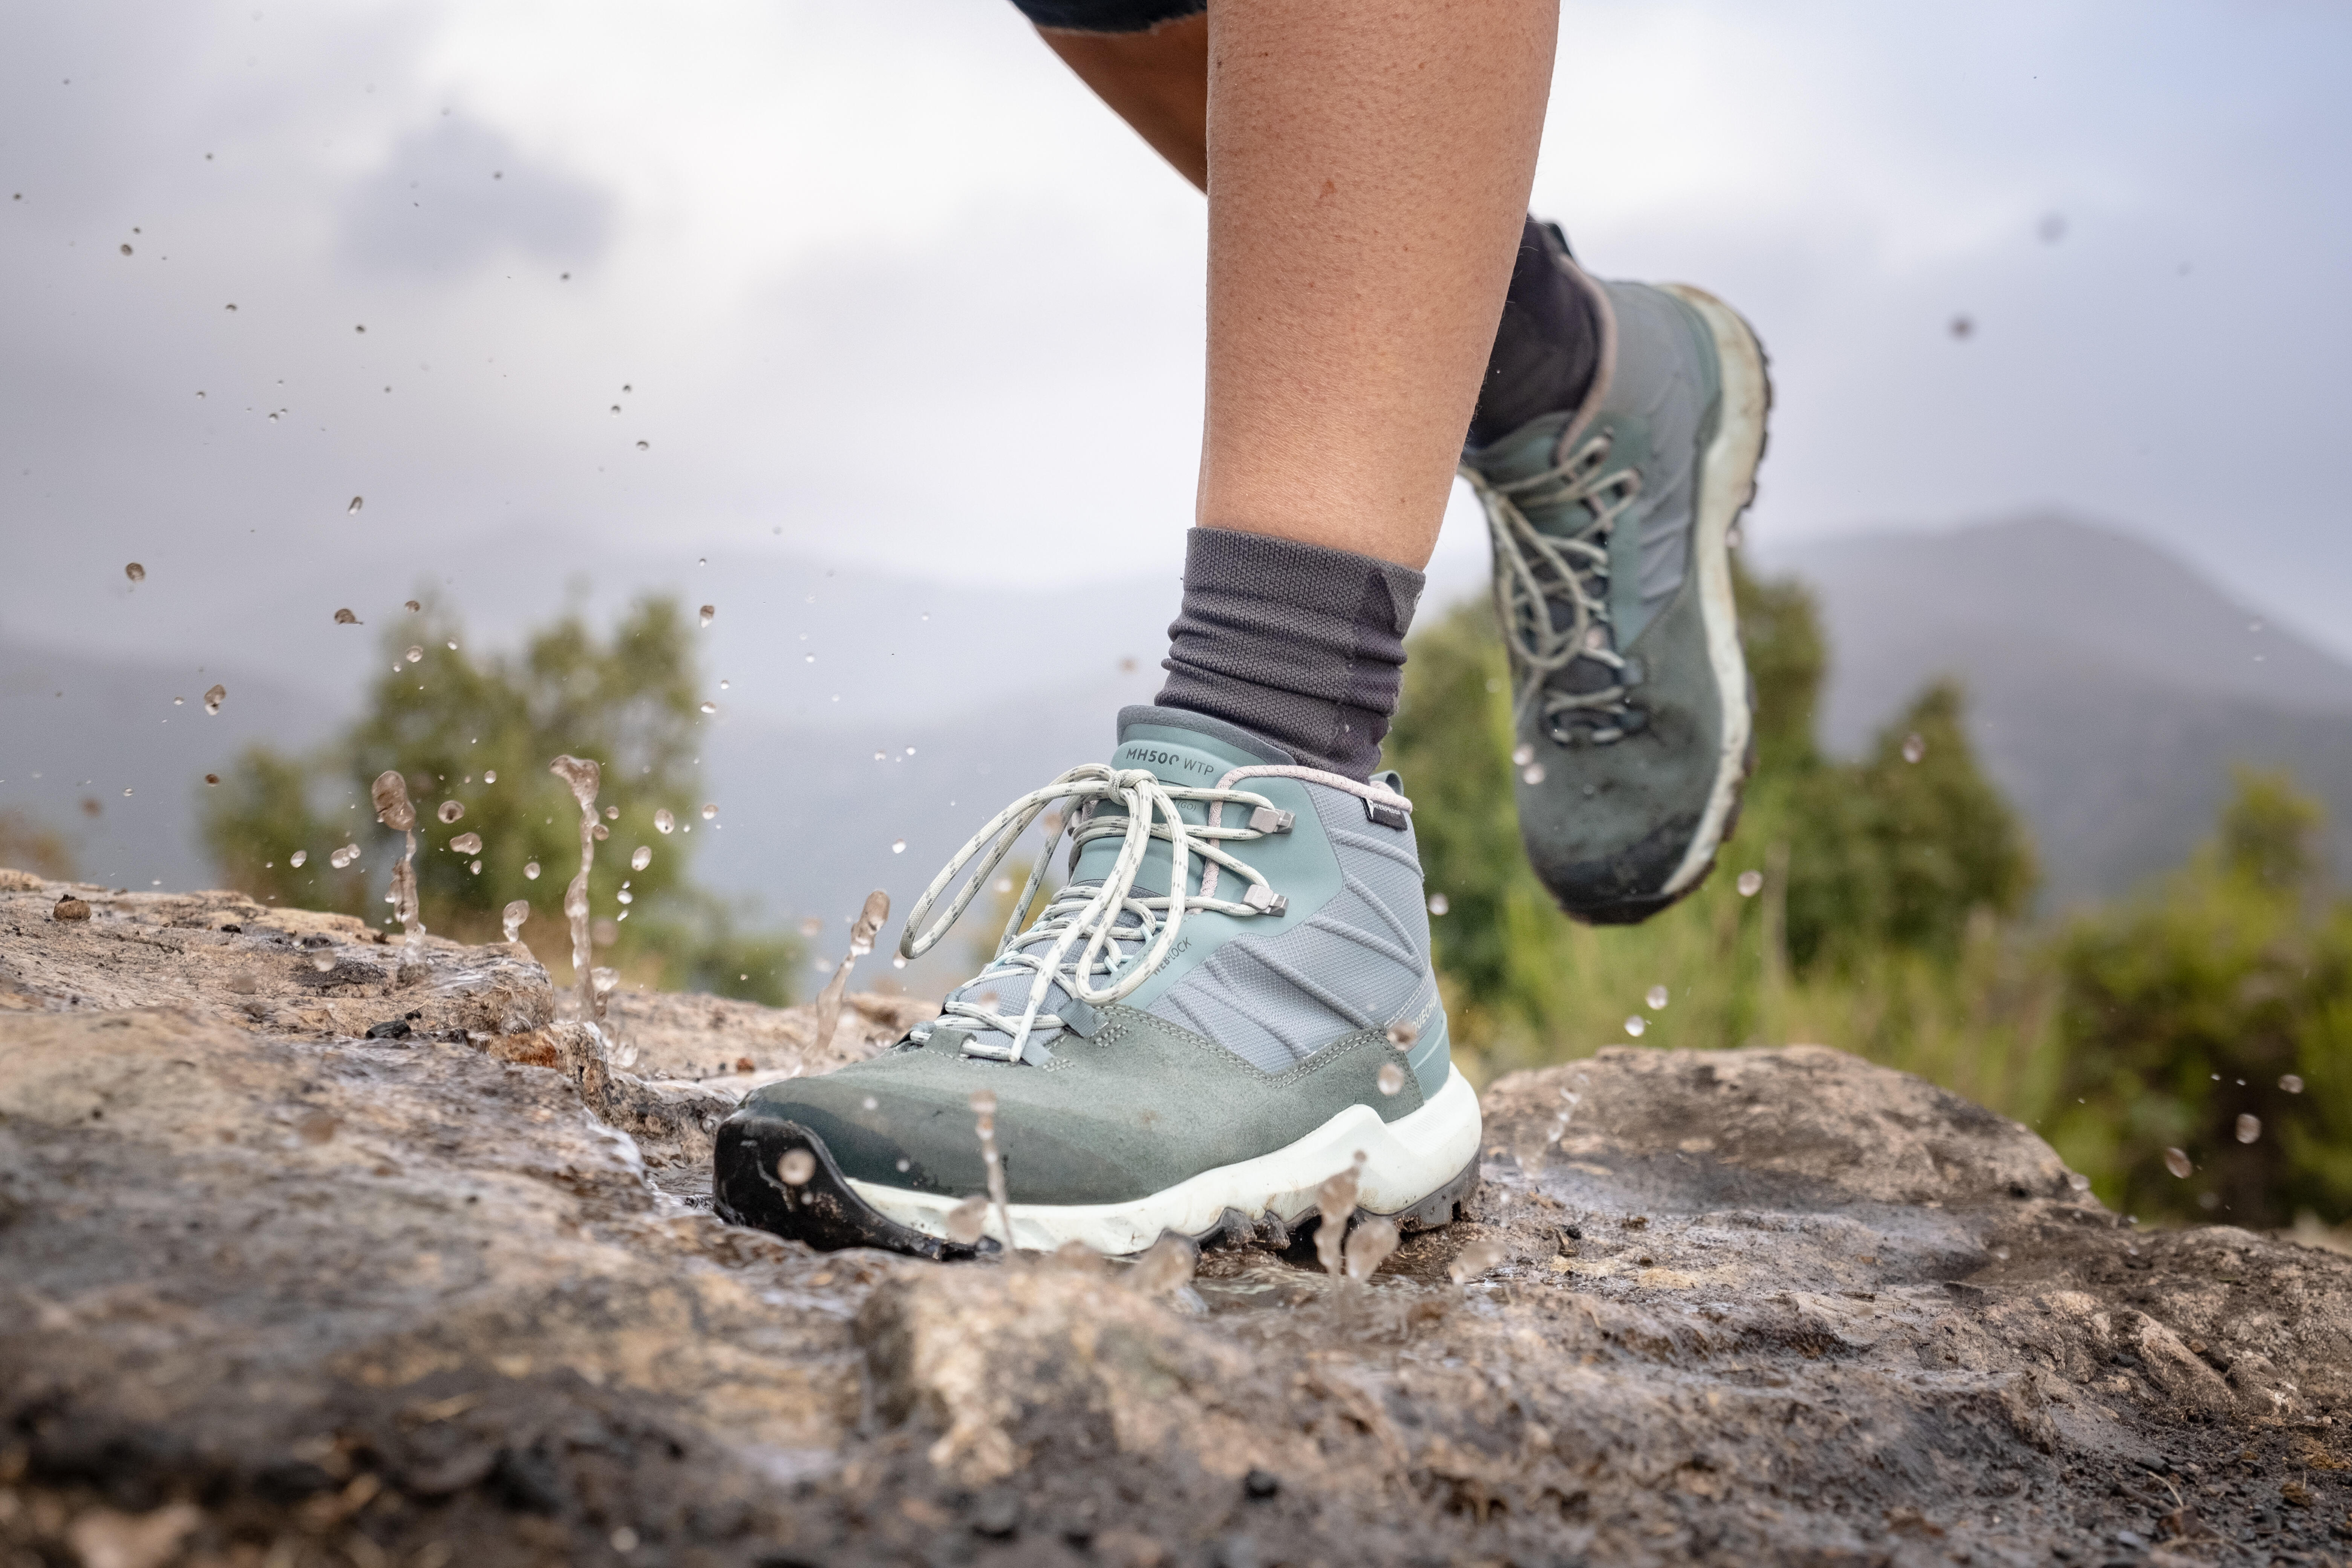 Chaussures de randonnée imperméables femme – MH 500 vert - QUECHUA